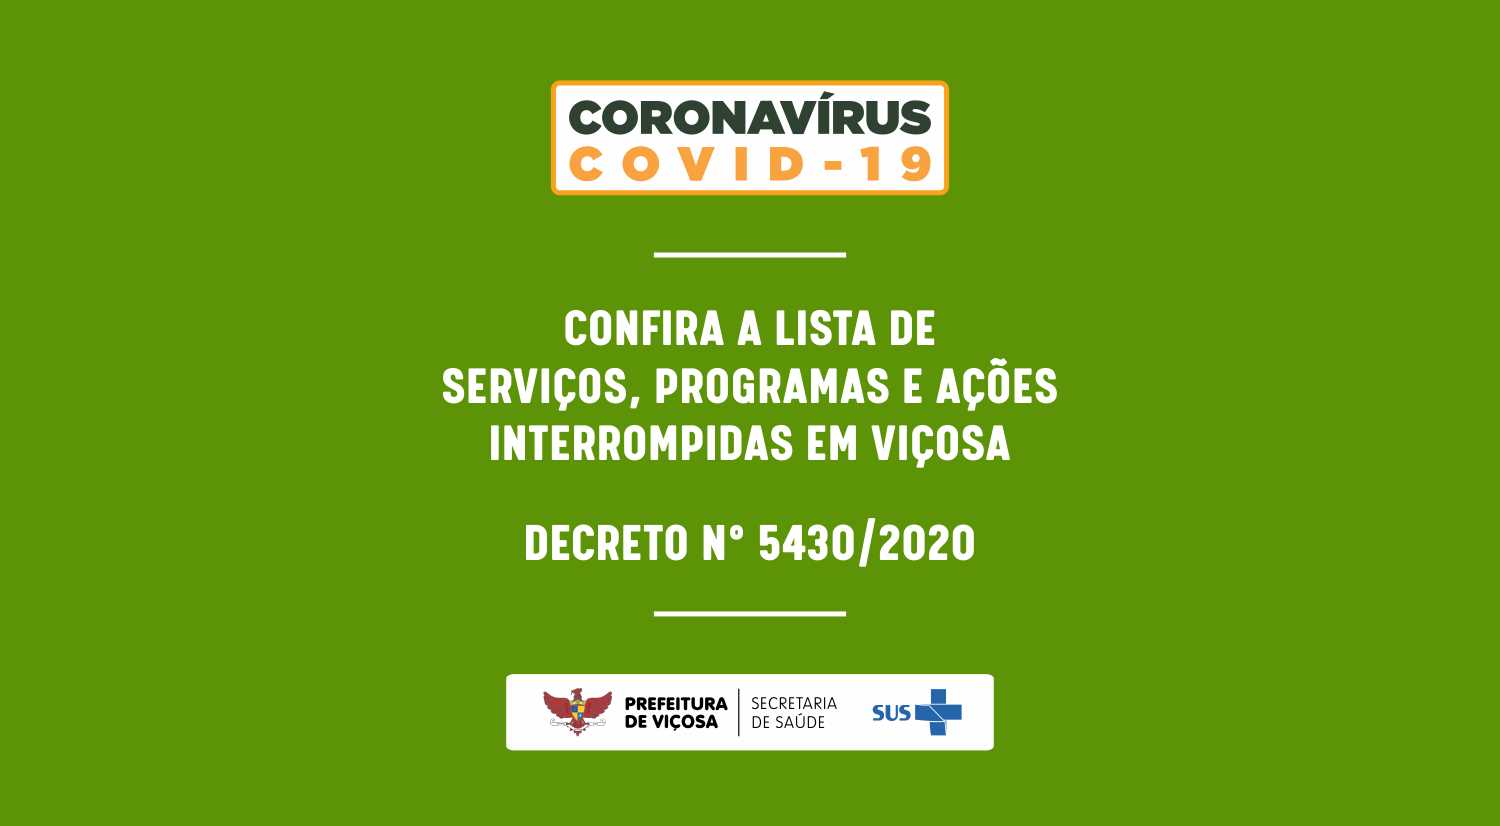 COVID-19: confira a lista de serviços, programas e ações interrompidas pela Prefeitura